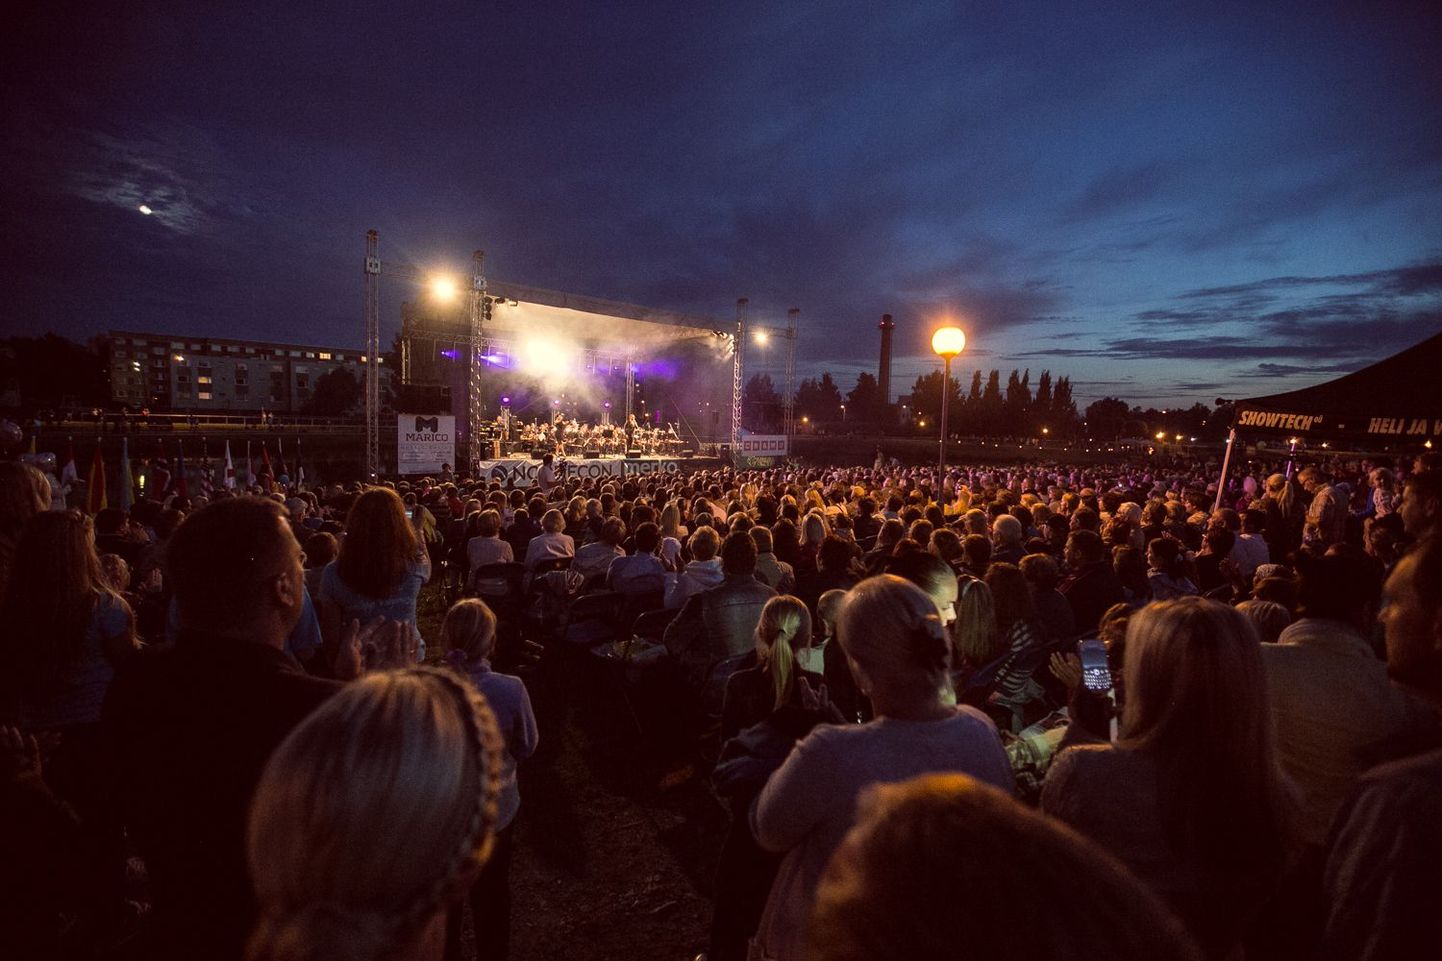 Augustikuu sumedatel suveöödel võib juhtuda mõndagi – seekord pakub elamusi Jõekääru kontsert.